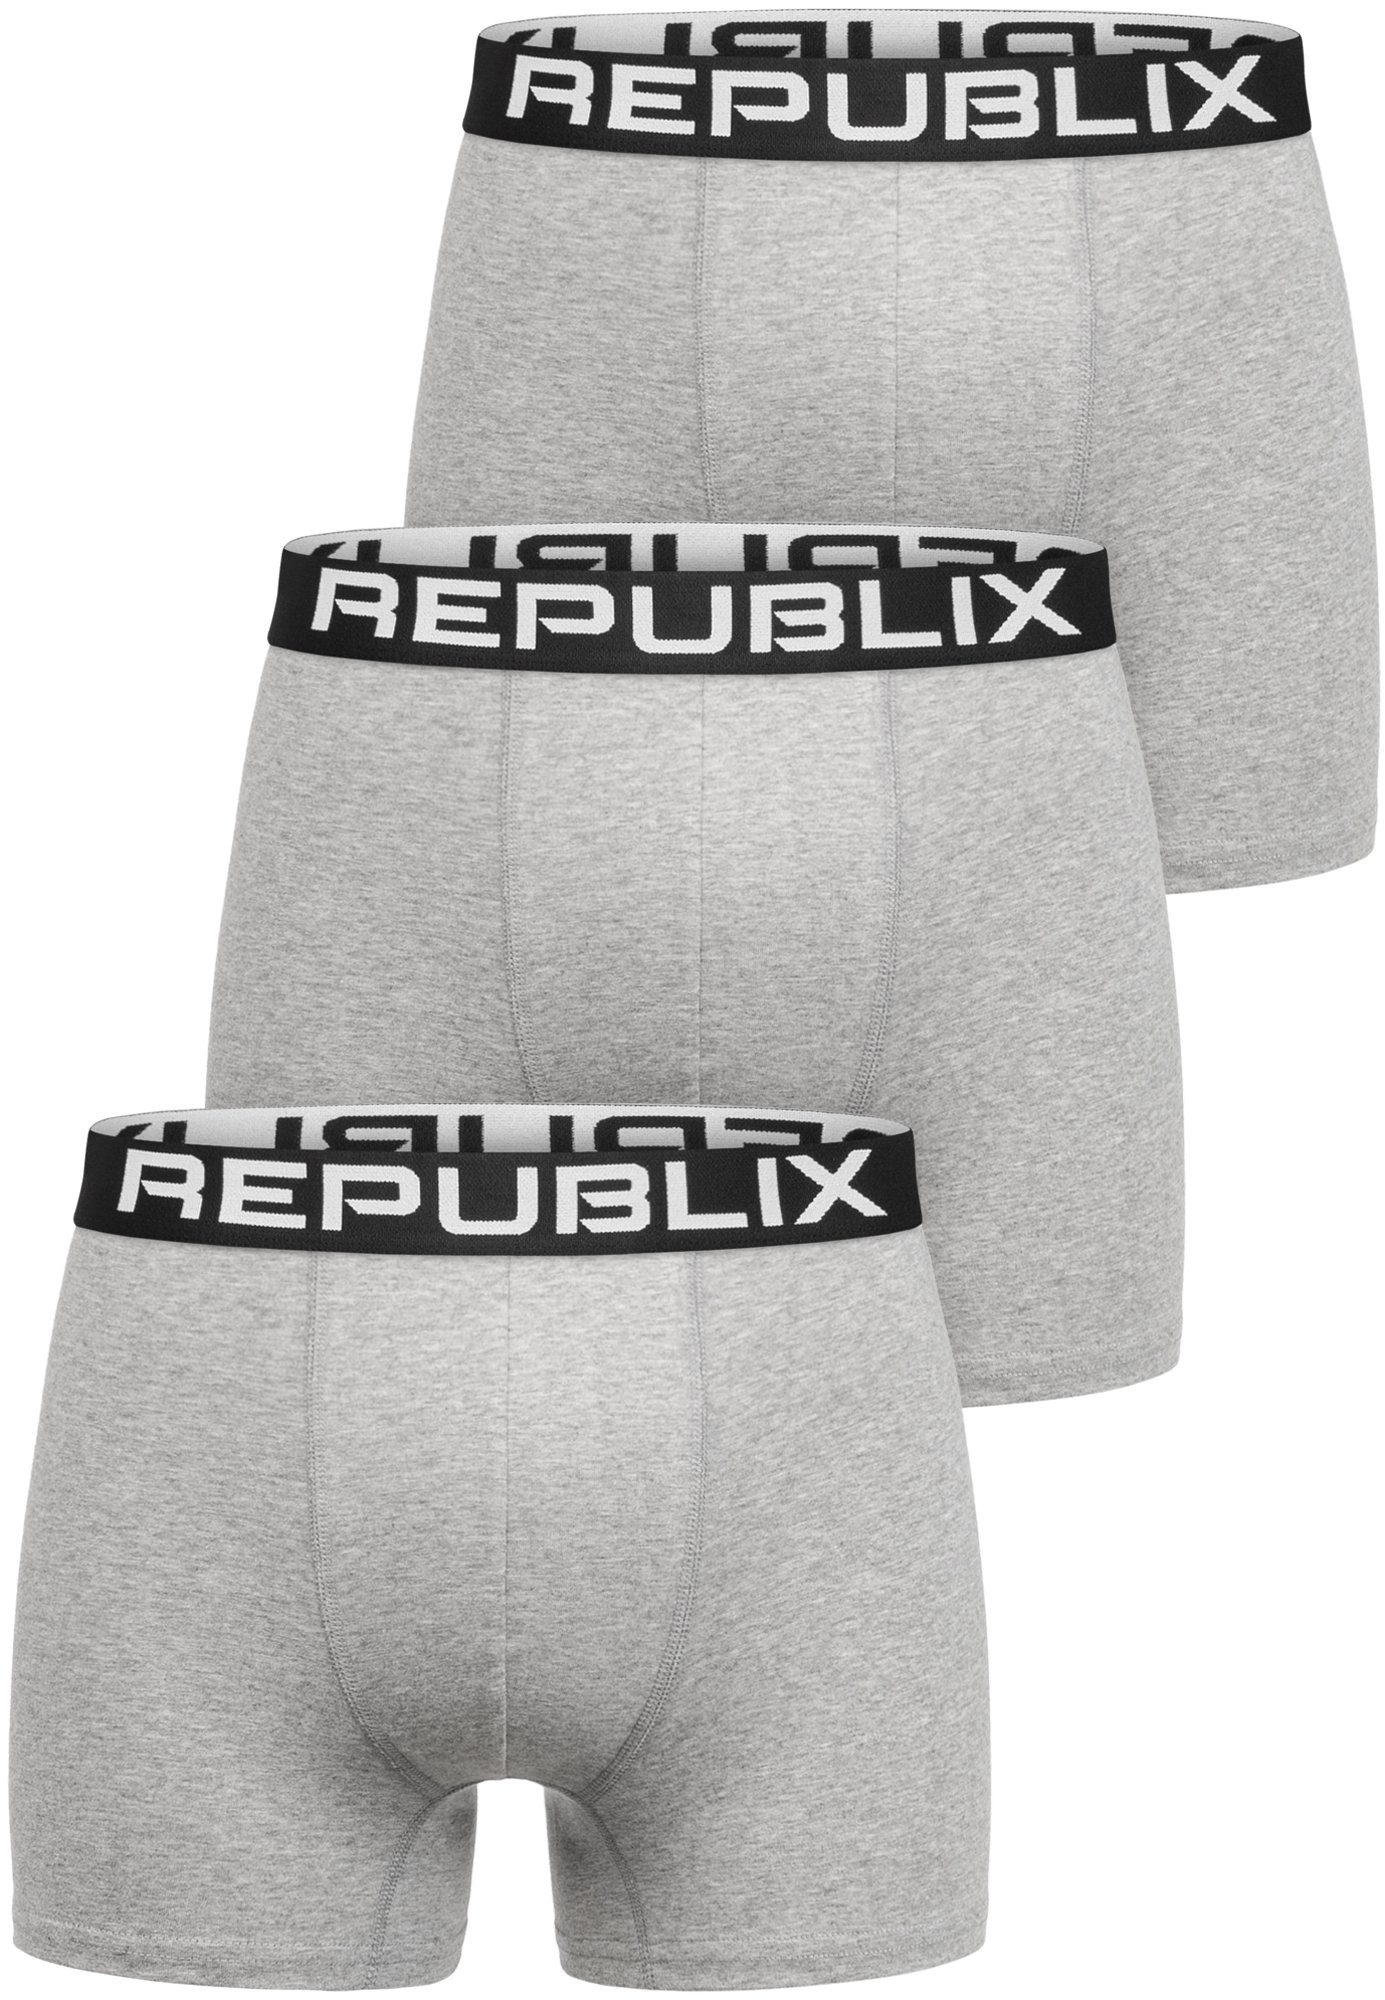 REPUBLIX Boxershorts Unterhose (3er-Pack) Baumwolle Unterwäsche Grau/Schwarz Männer DON Herren